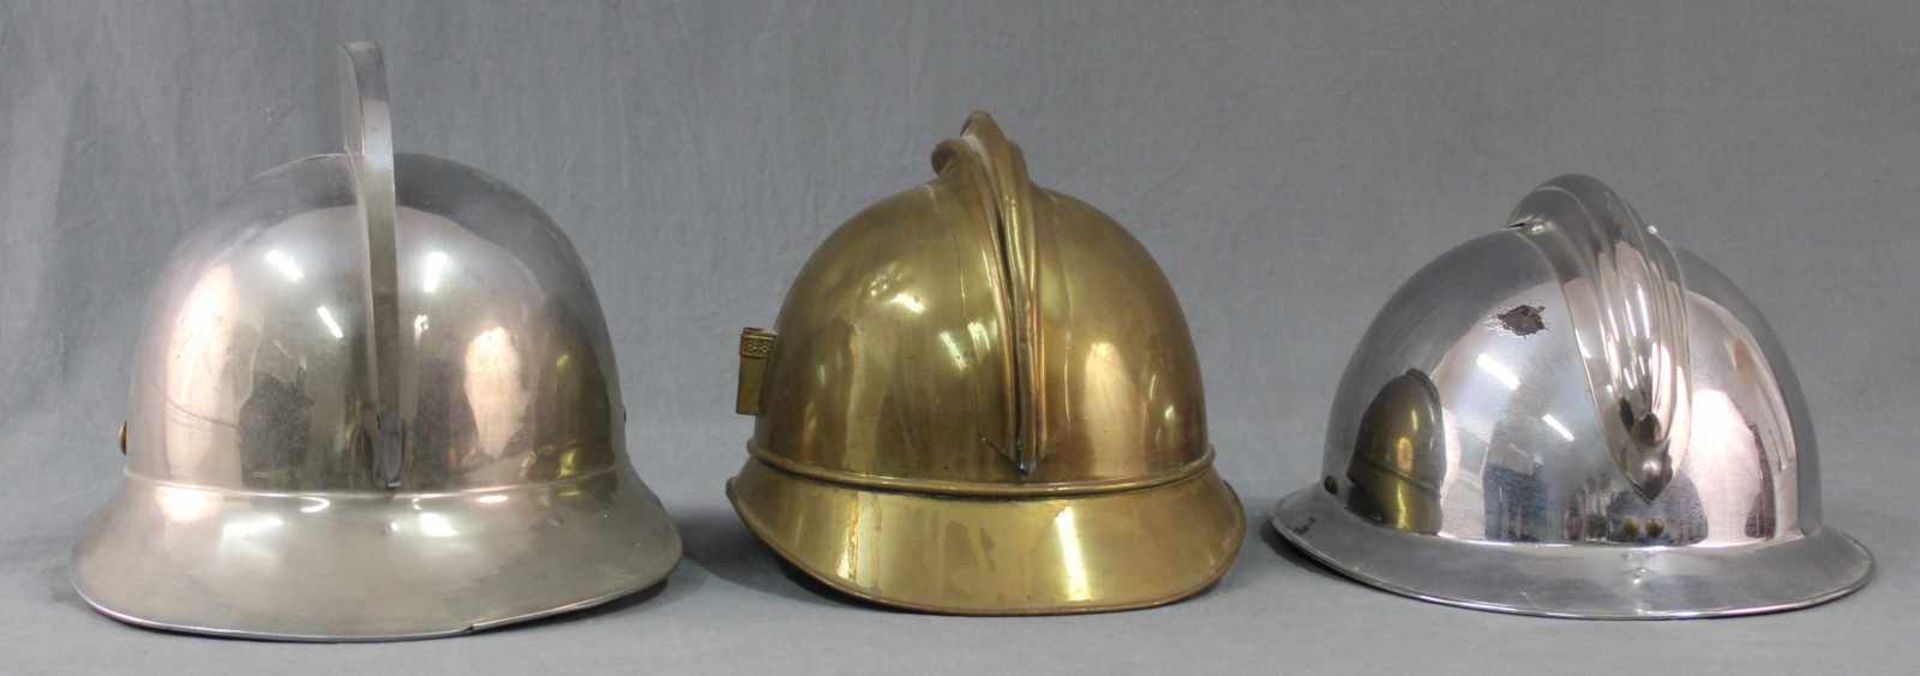 3 Feuerwehrhelme, alt. Auch Frankreich.Bis 30 cm Gesamtlänge.3 Firefighter Helmets, old. Including - Bild 5 aus 11